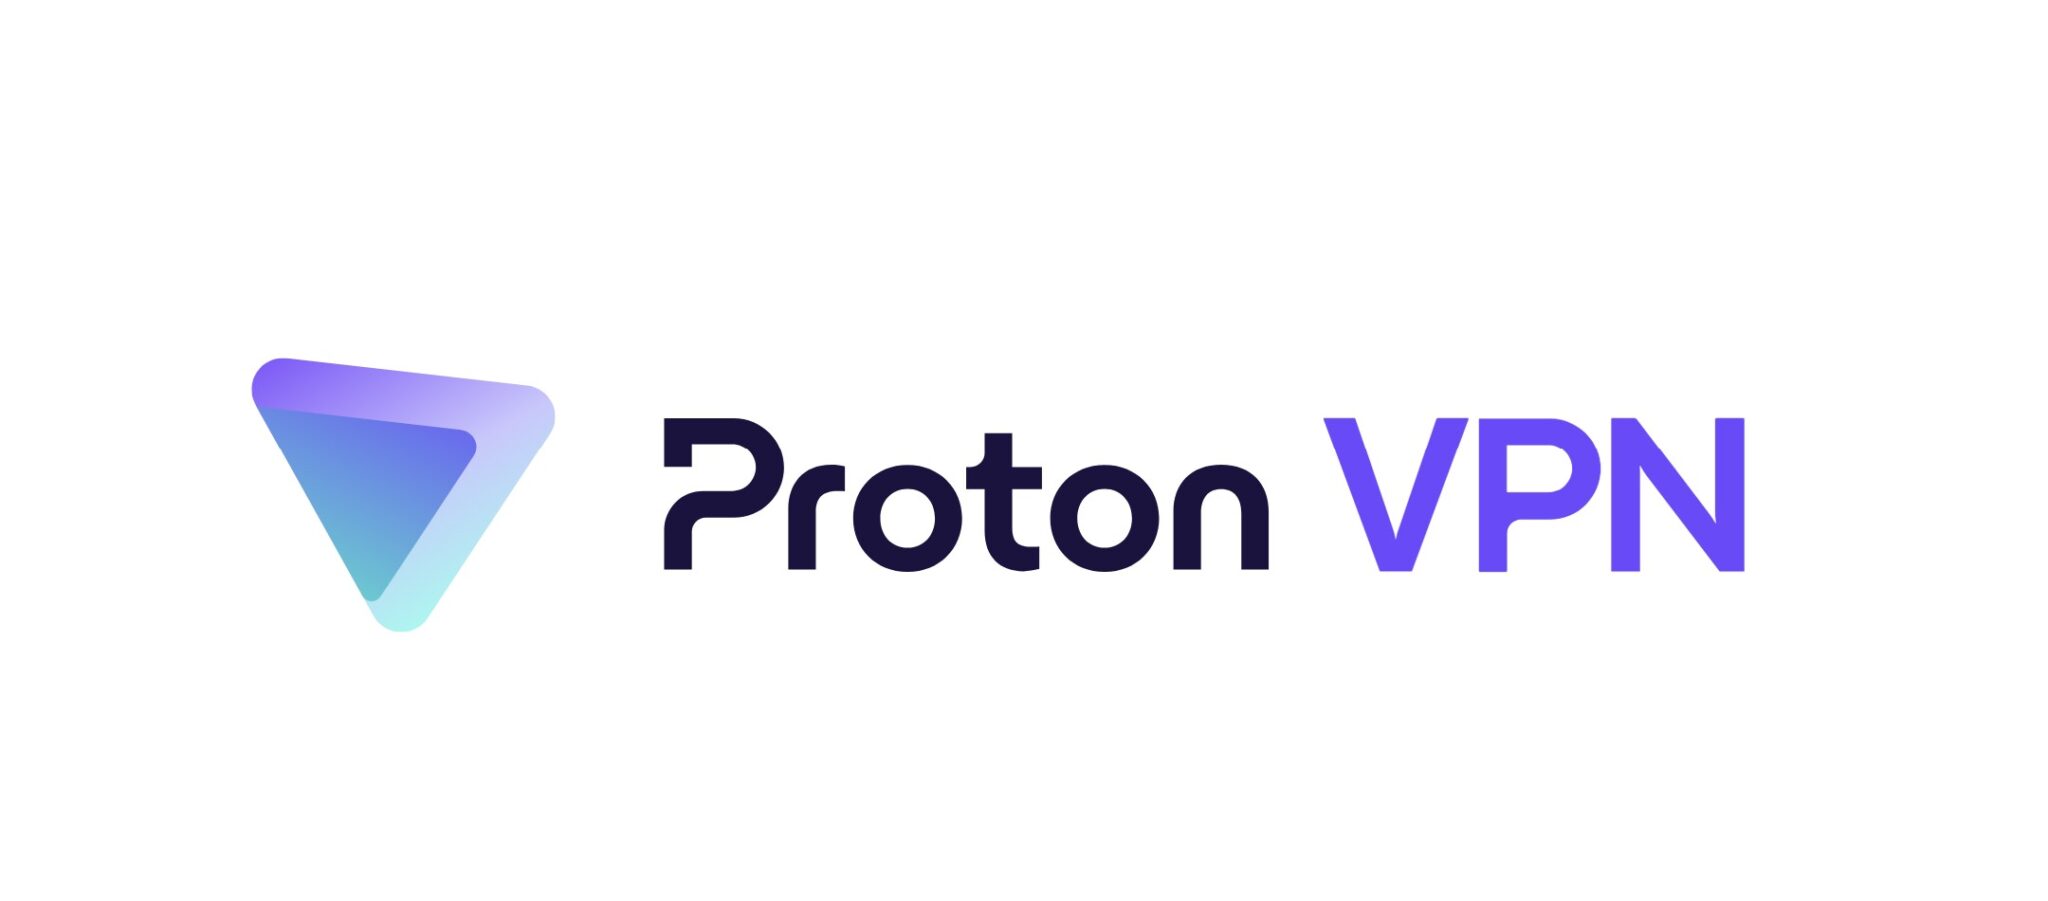 Proton VPN logo